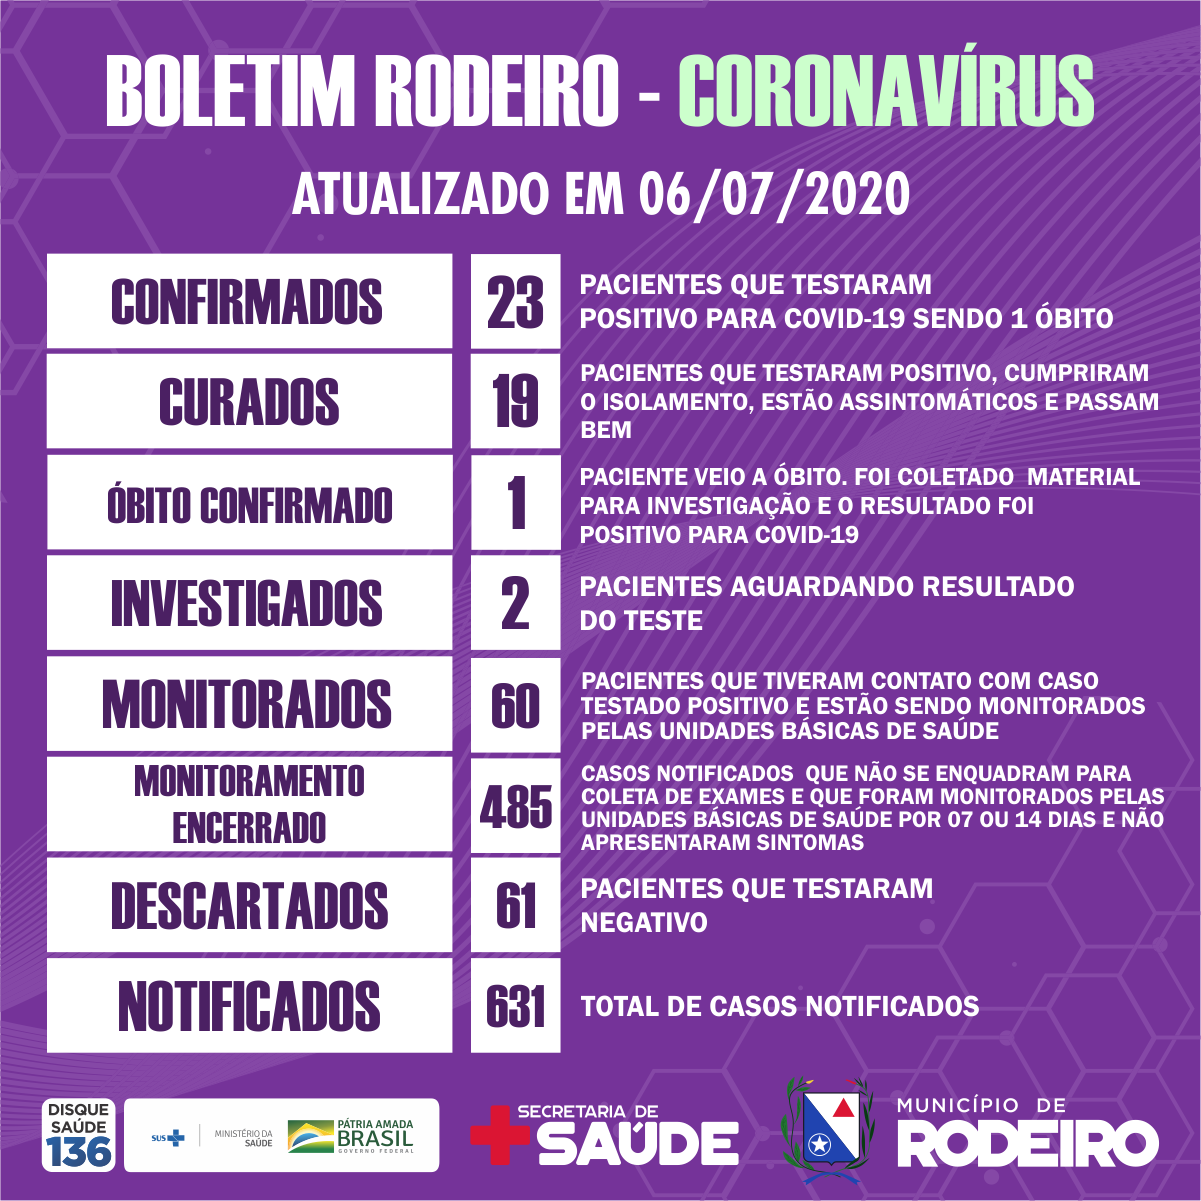 Boletim epidemiológico do Município de Rodeiro coronavírus, atualizado em 06/07/2020